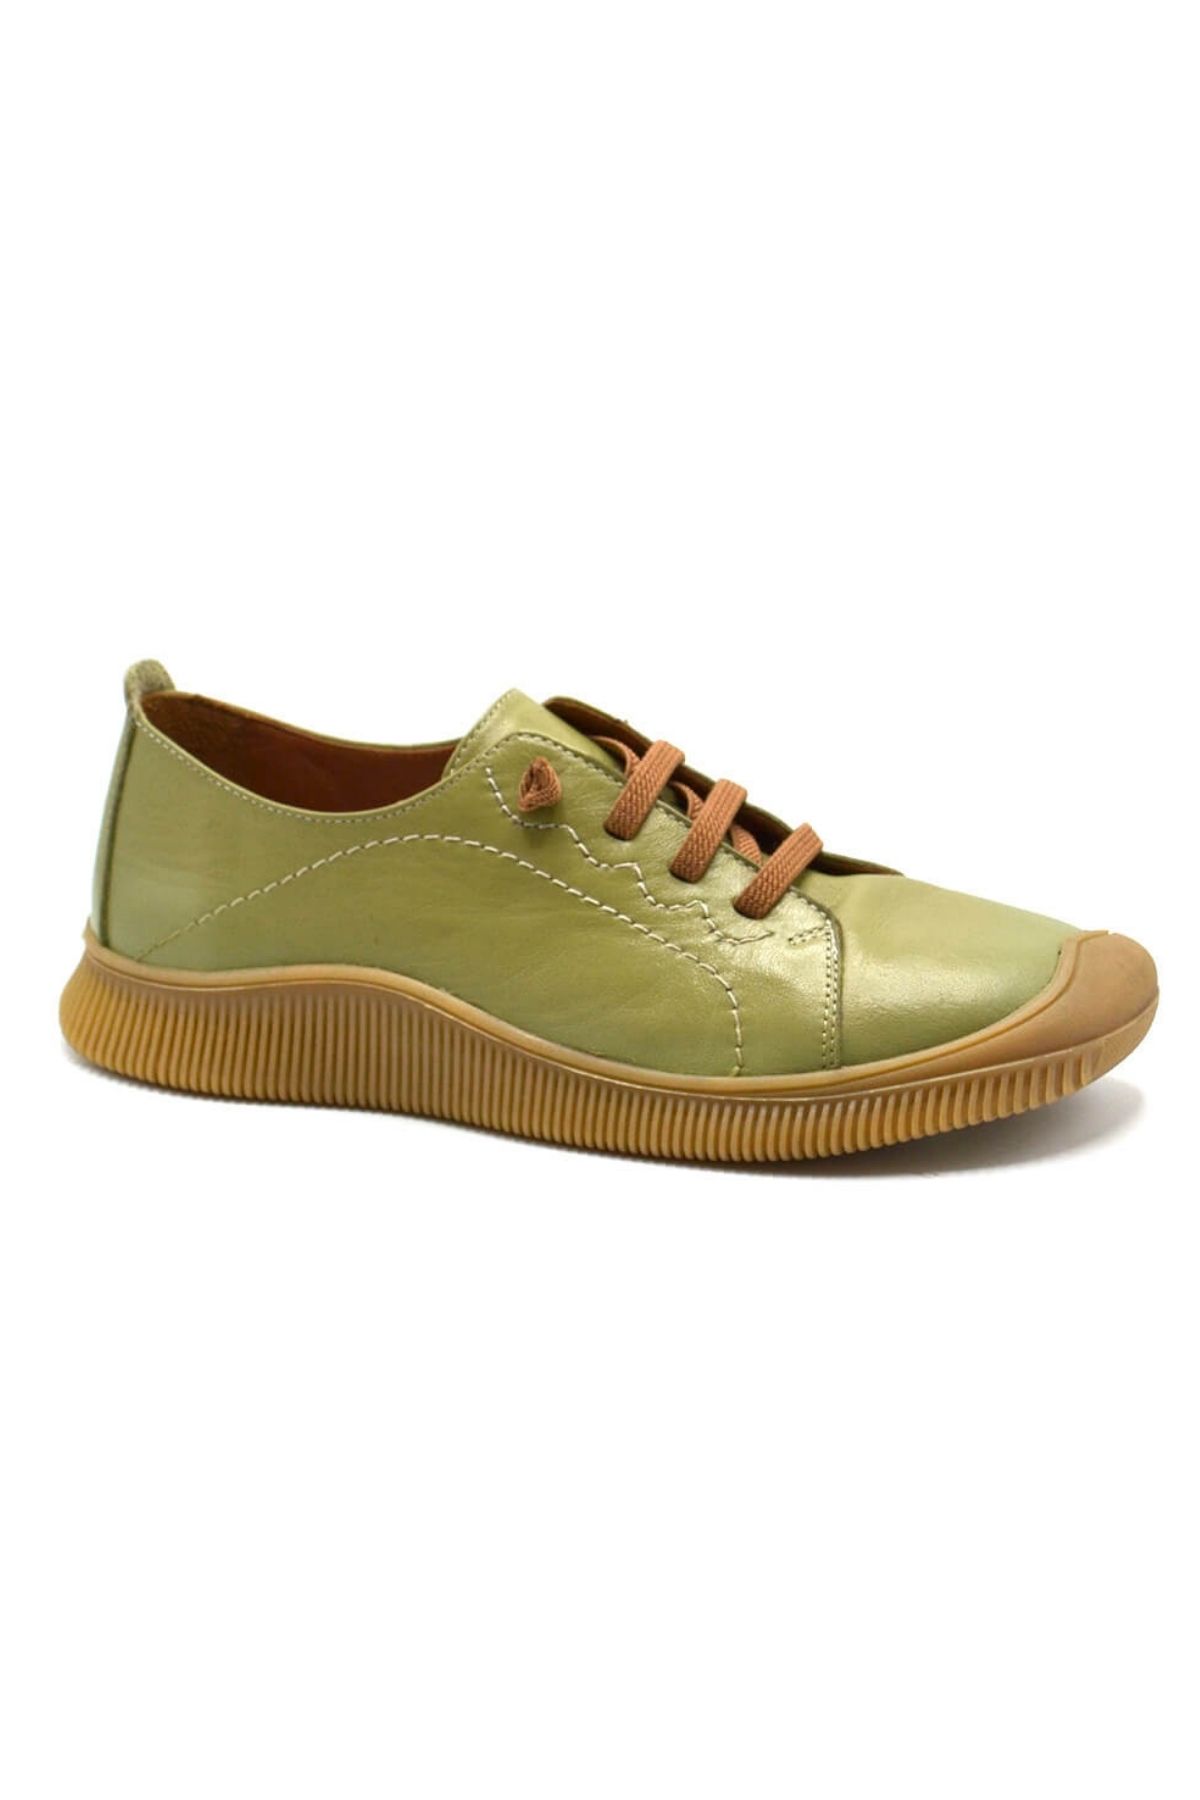 Kadın Comfort Deri Ayakkabı Yeşil 2413504Y